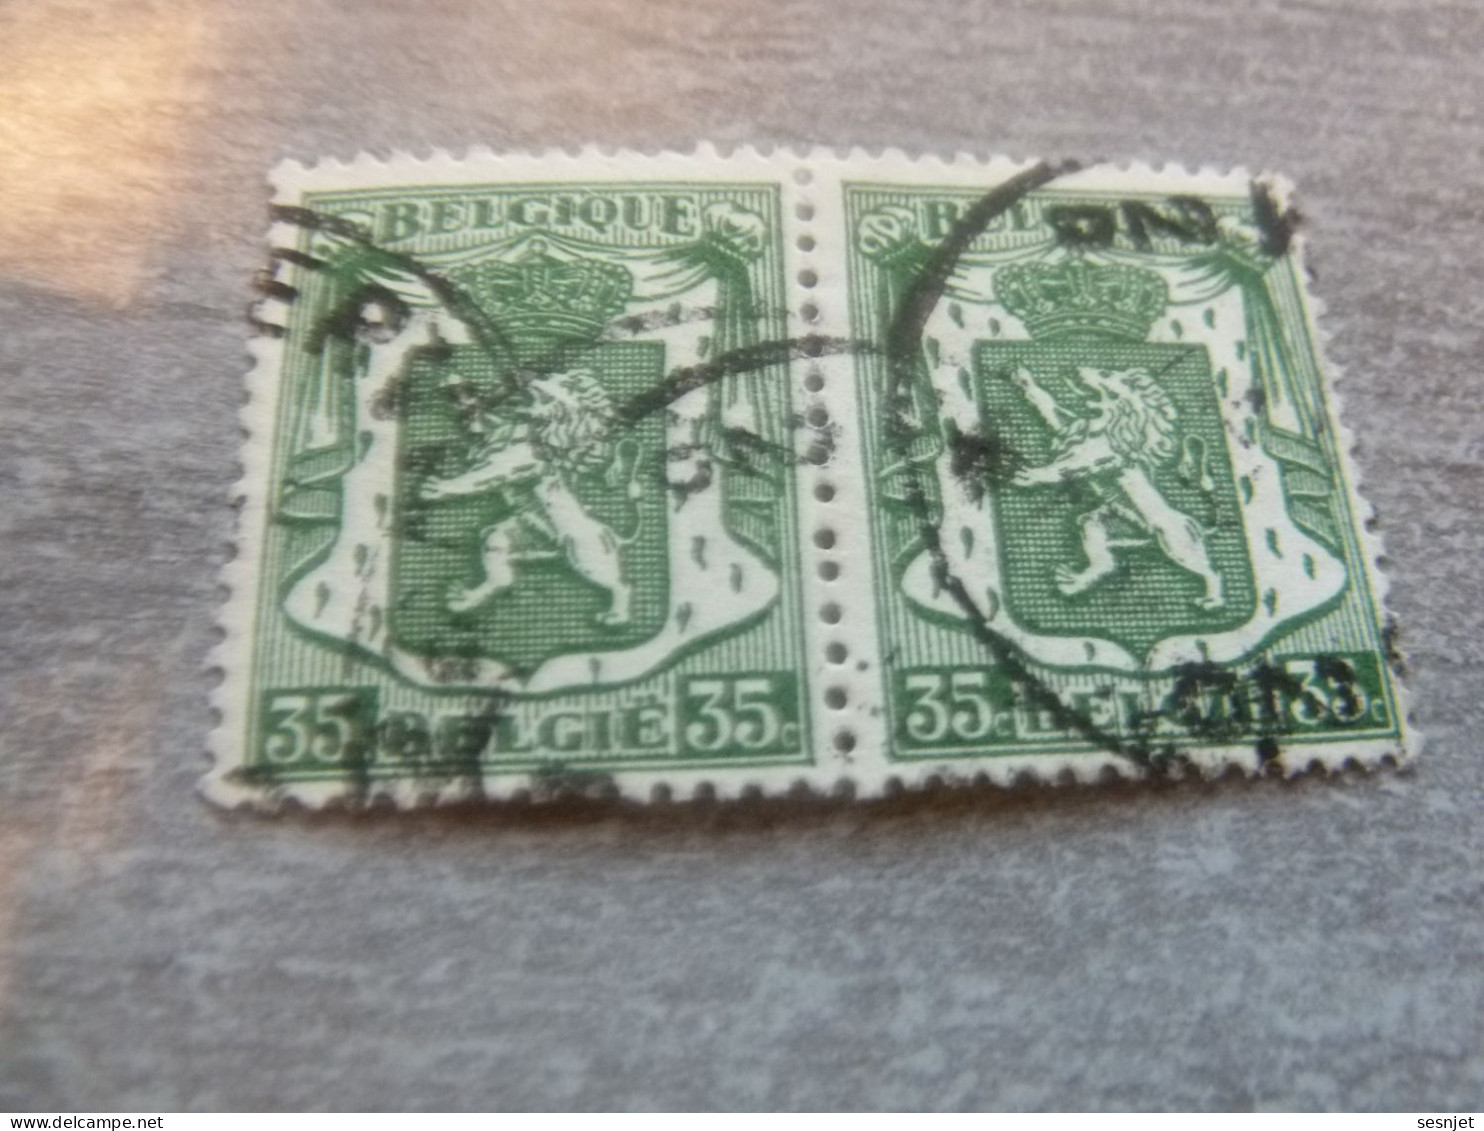 Belgique - Armoirie - Lion - 35c. - Vert - Double Oblitérés - Année 1936 - - Usados